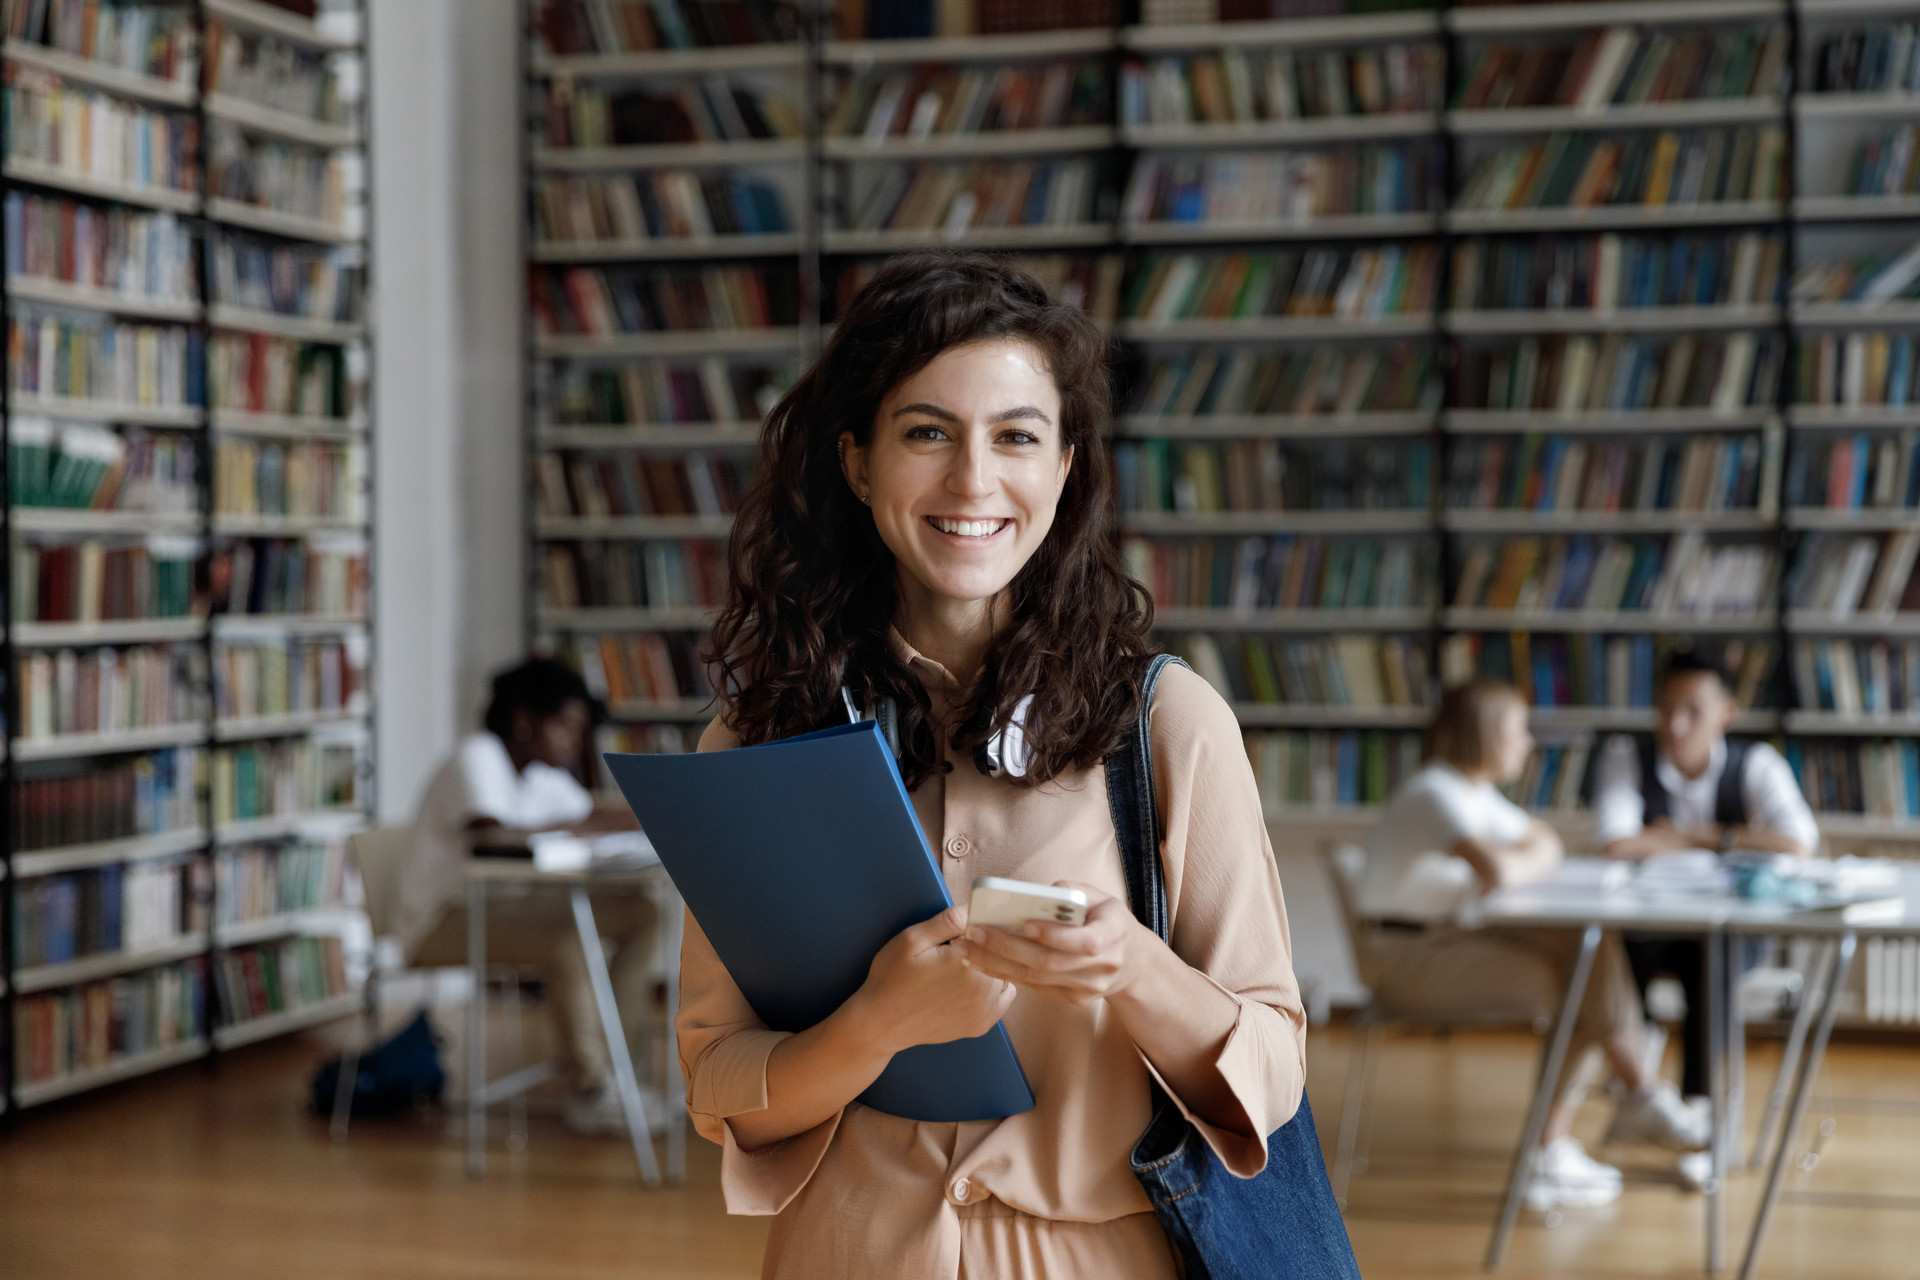 Eine Frau steht in einer Bibliothek. Sie lächelt und hält ein Buch und ein Smartphone in der Hand.